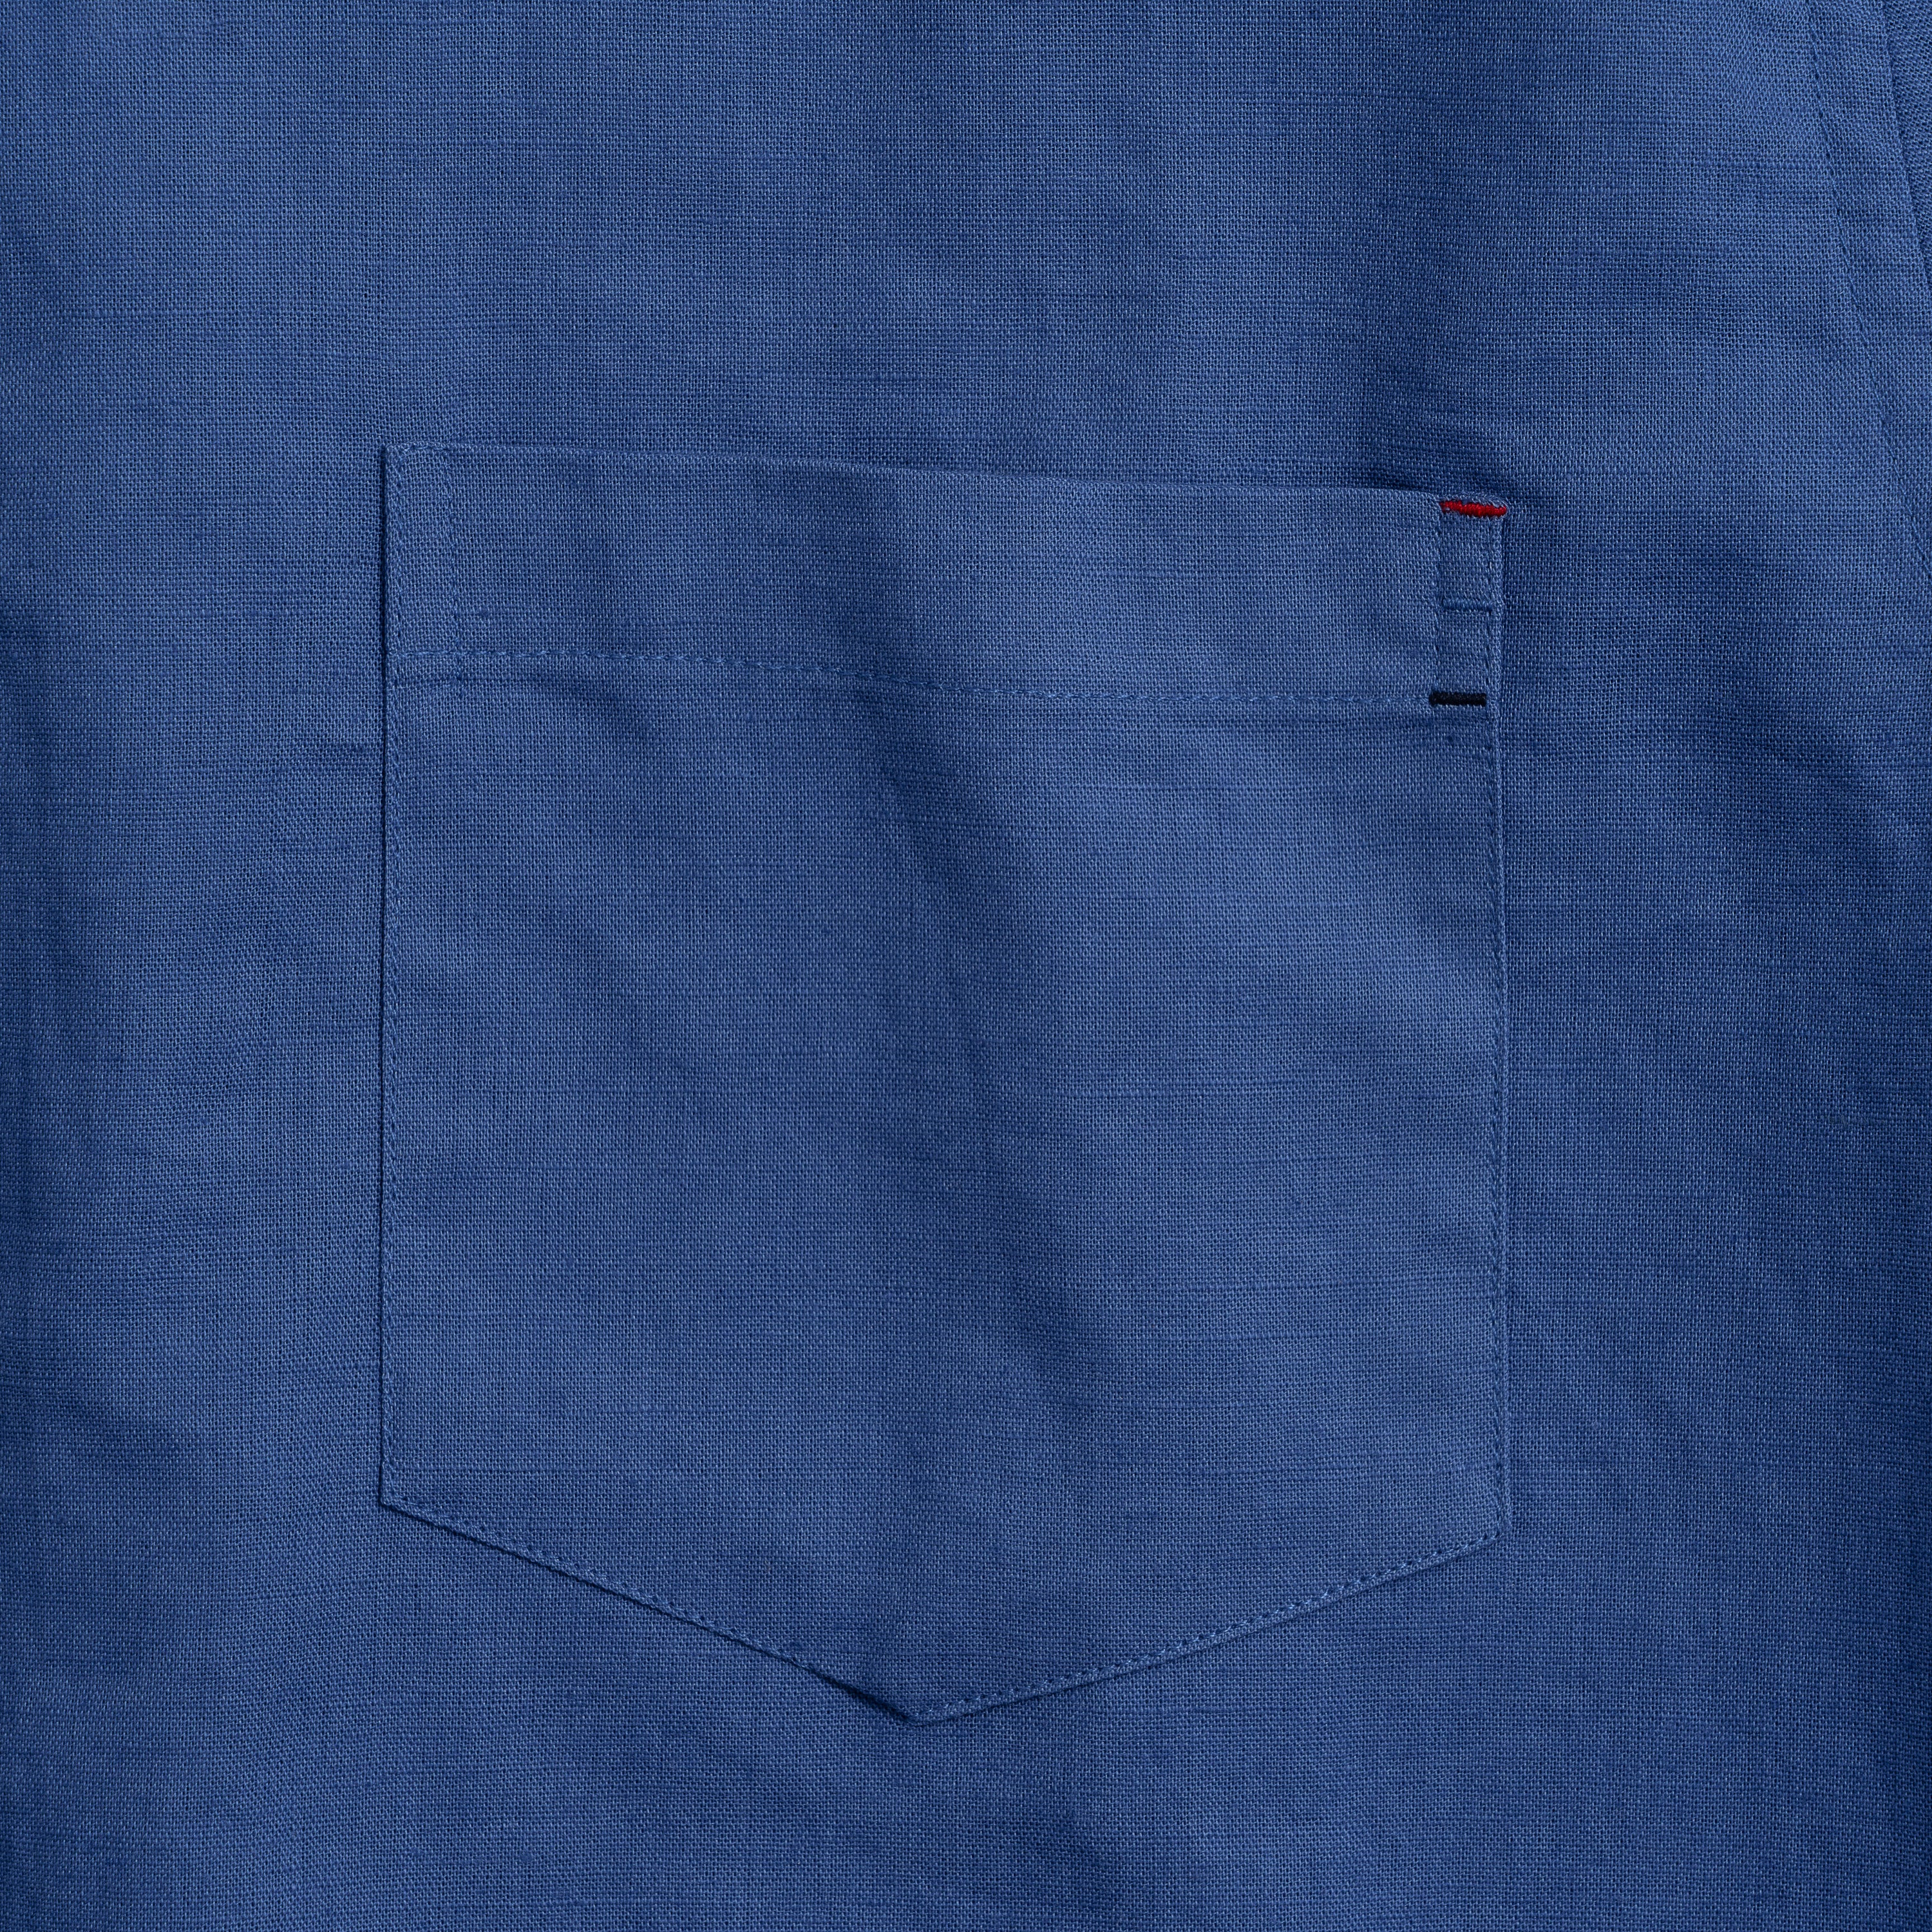 Hawaiian Shirt For Men Riviera Holiday Pointed Collar Long Sleeve Shirt - Royal Blue